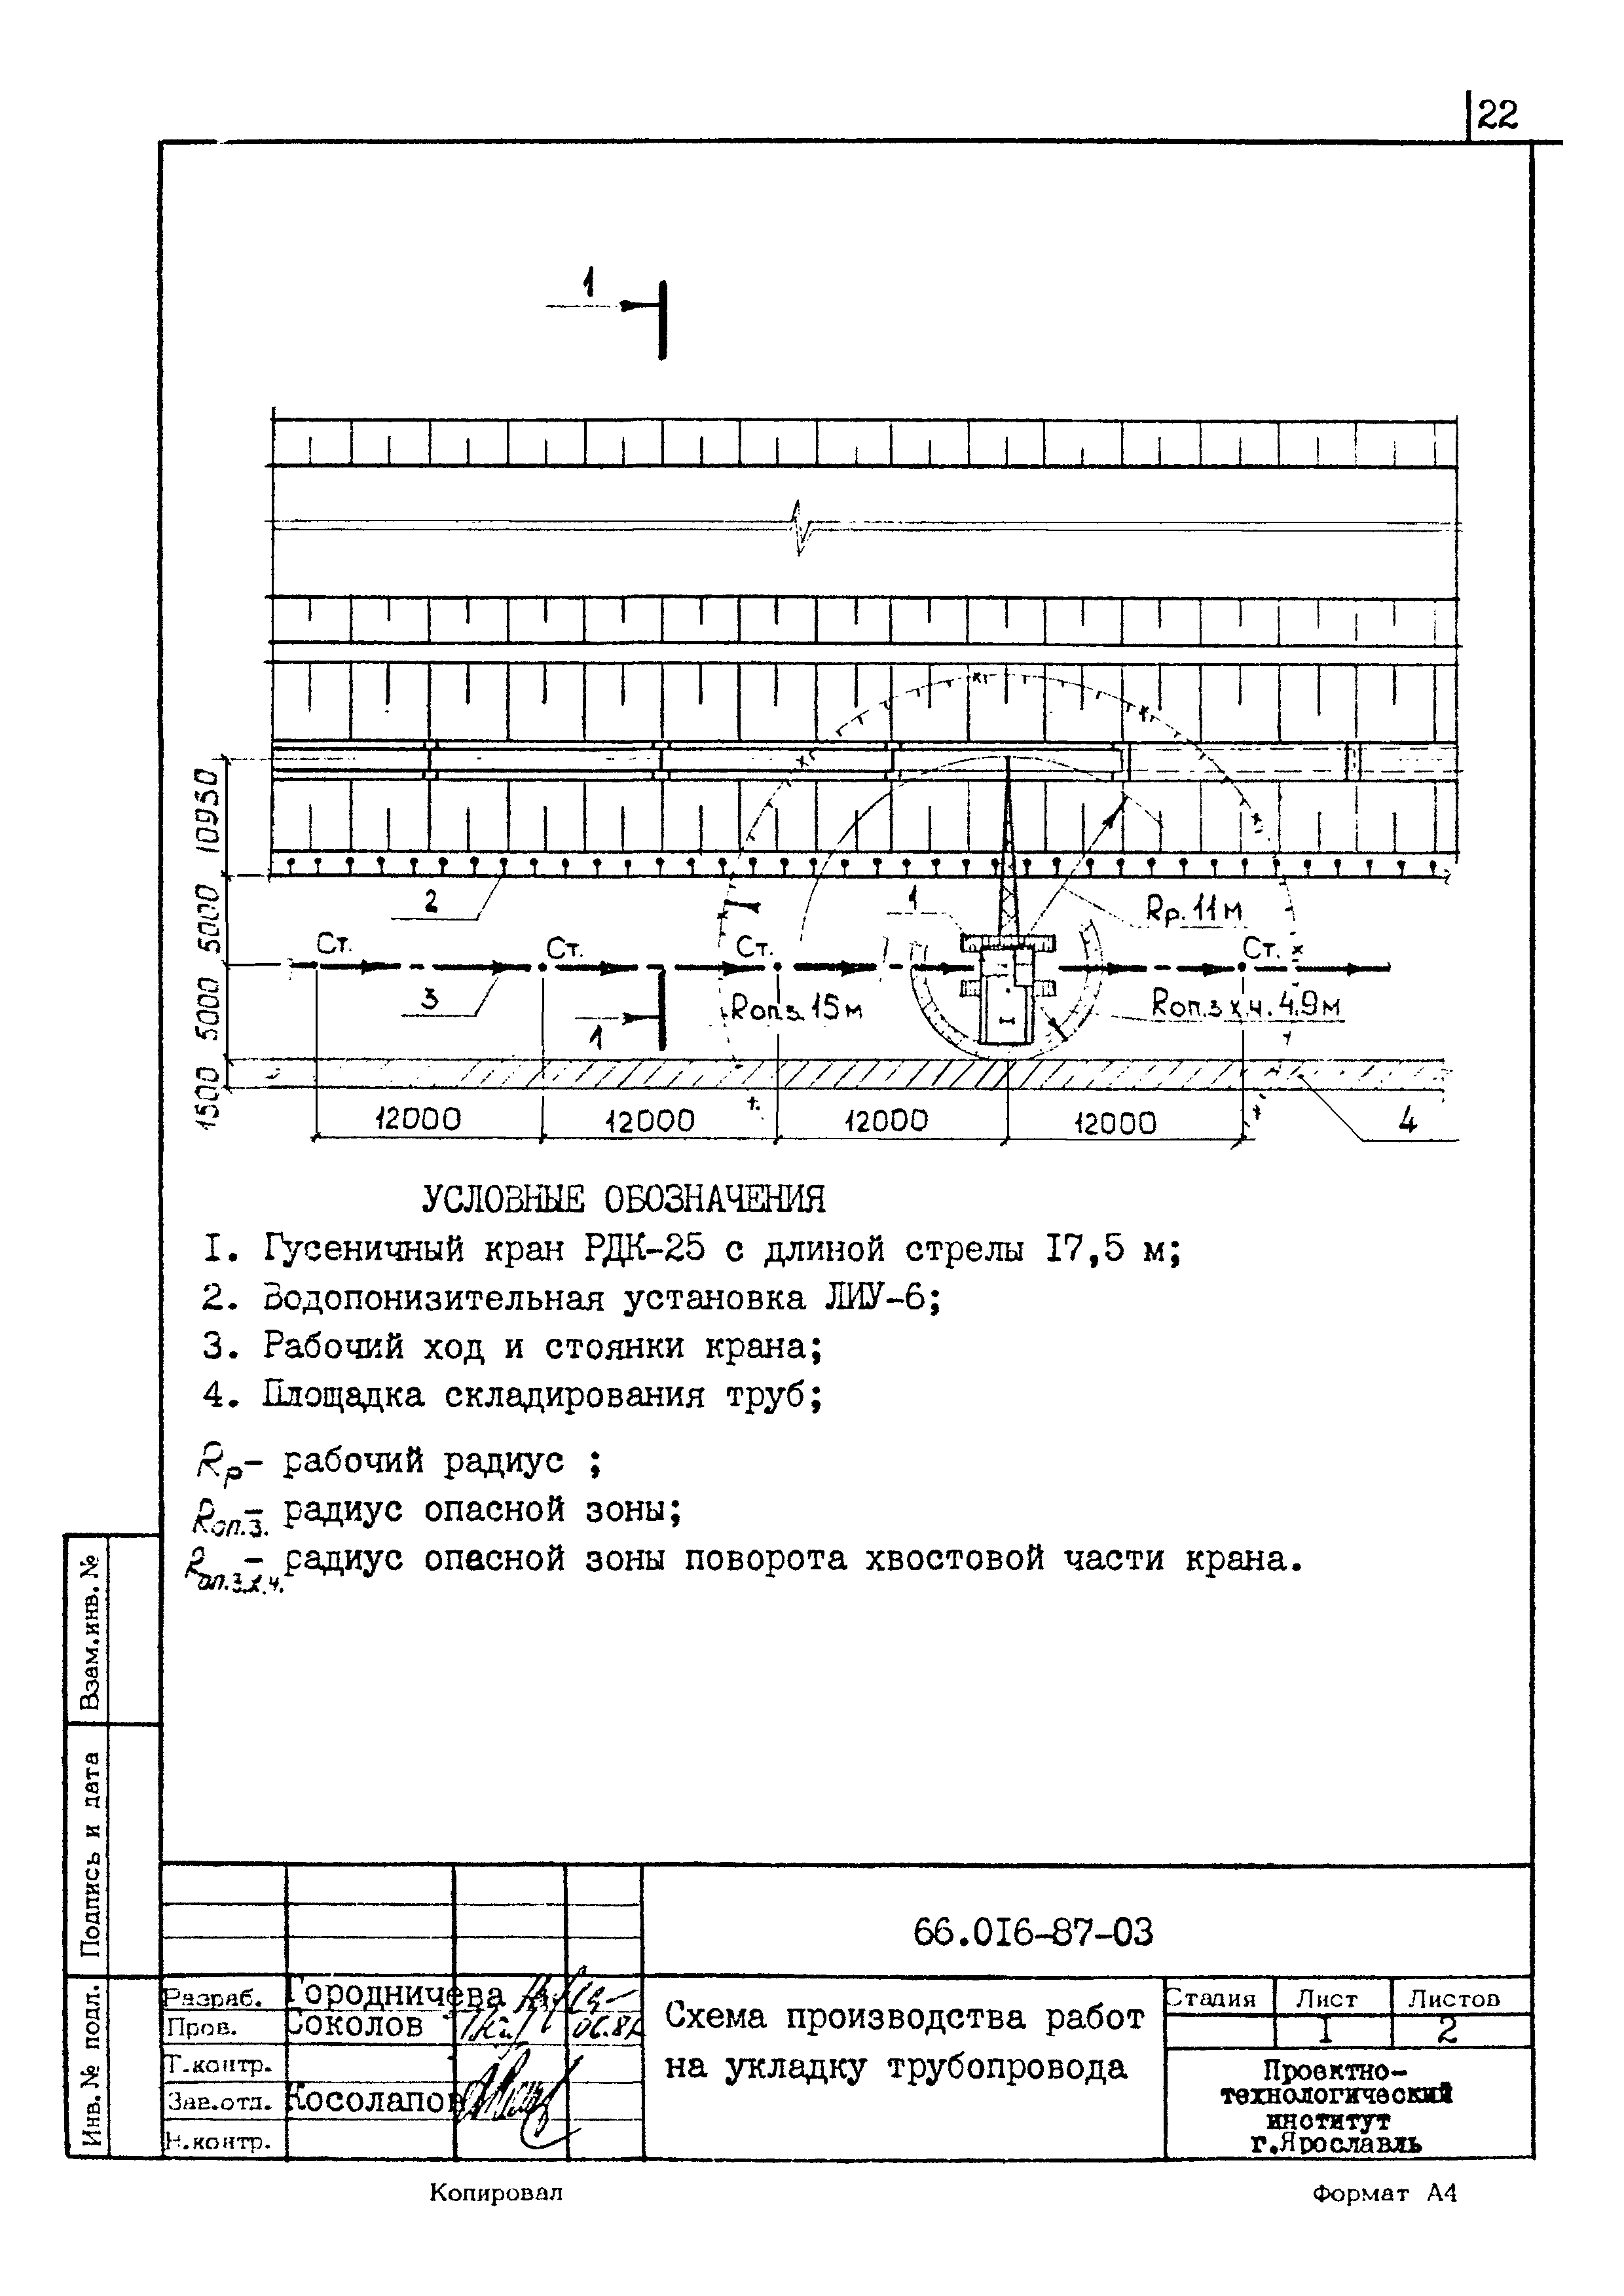 ТК 66.016-87